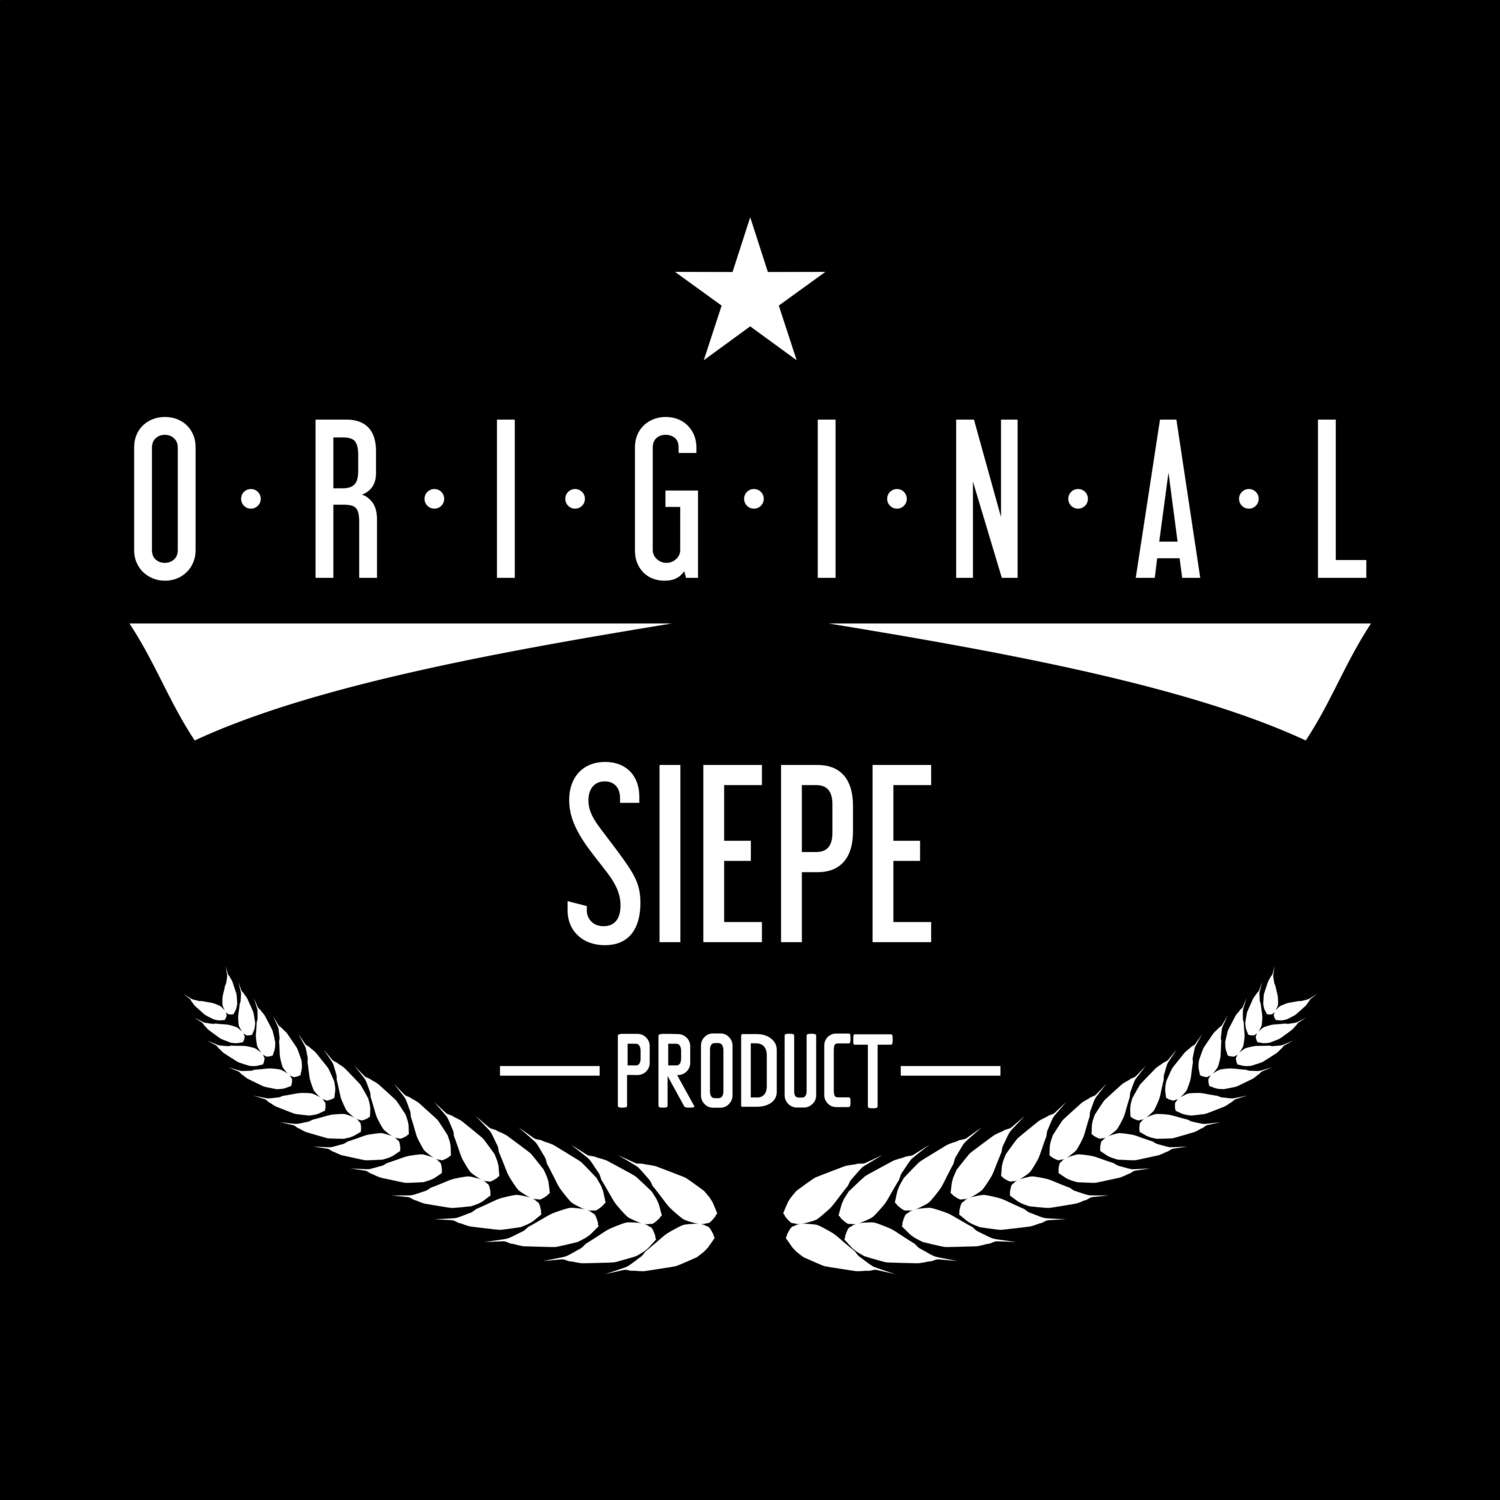 Siepe T-Shirt »Original Product«